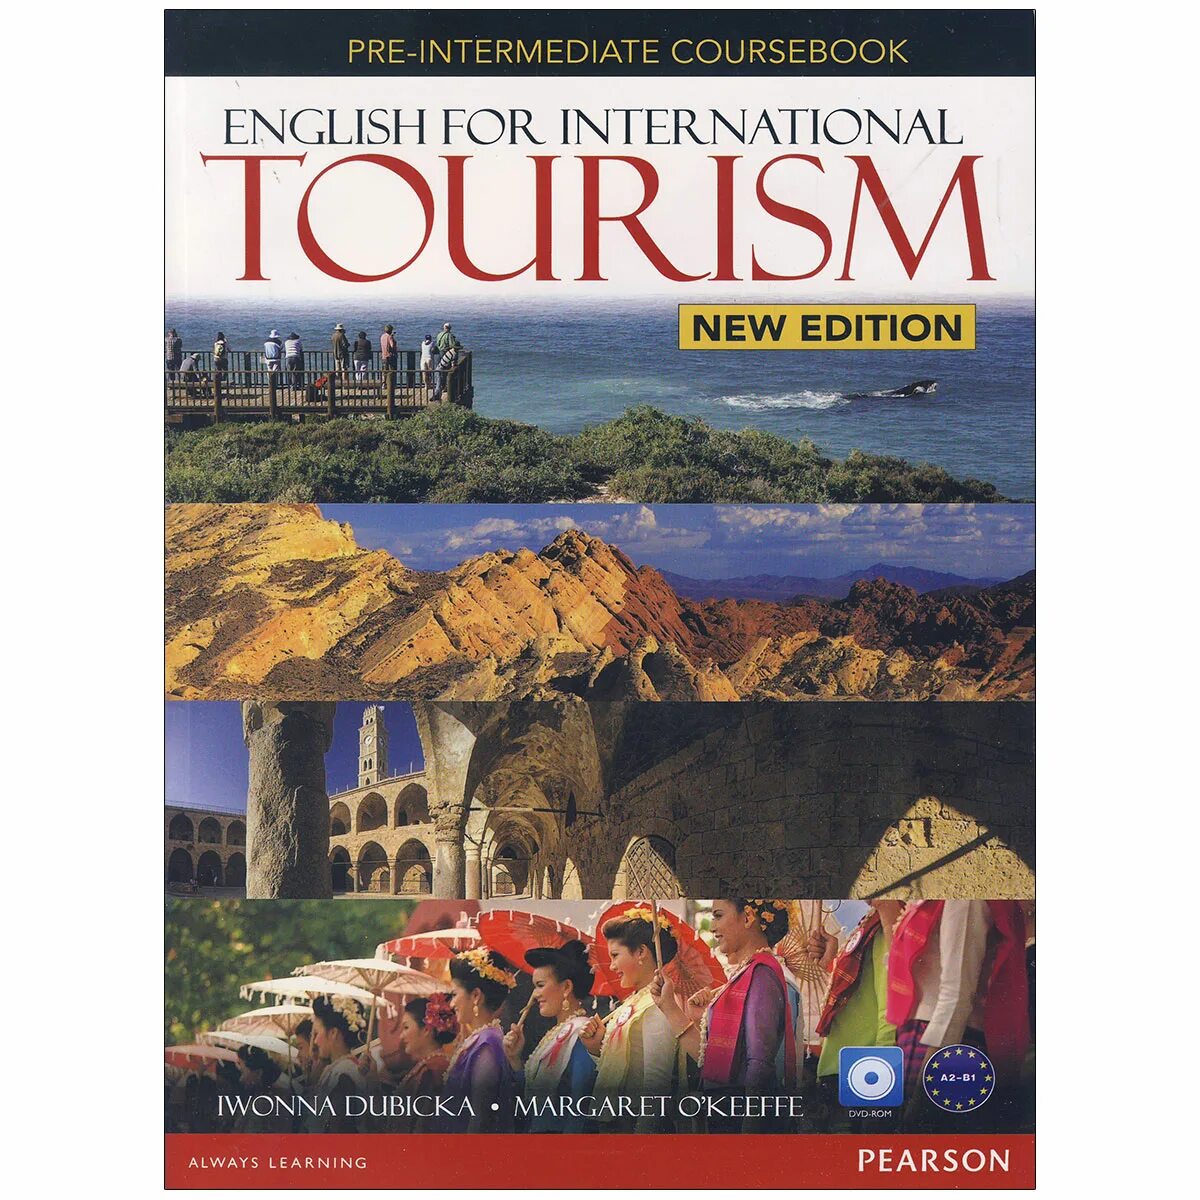 Tourism book. English for International Tourism: pre-Intermediate Coursebook. English for International Tourism учебник. Английский в туризме учебник. English for Tourism pre-Intermediate.